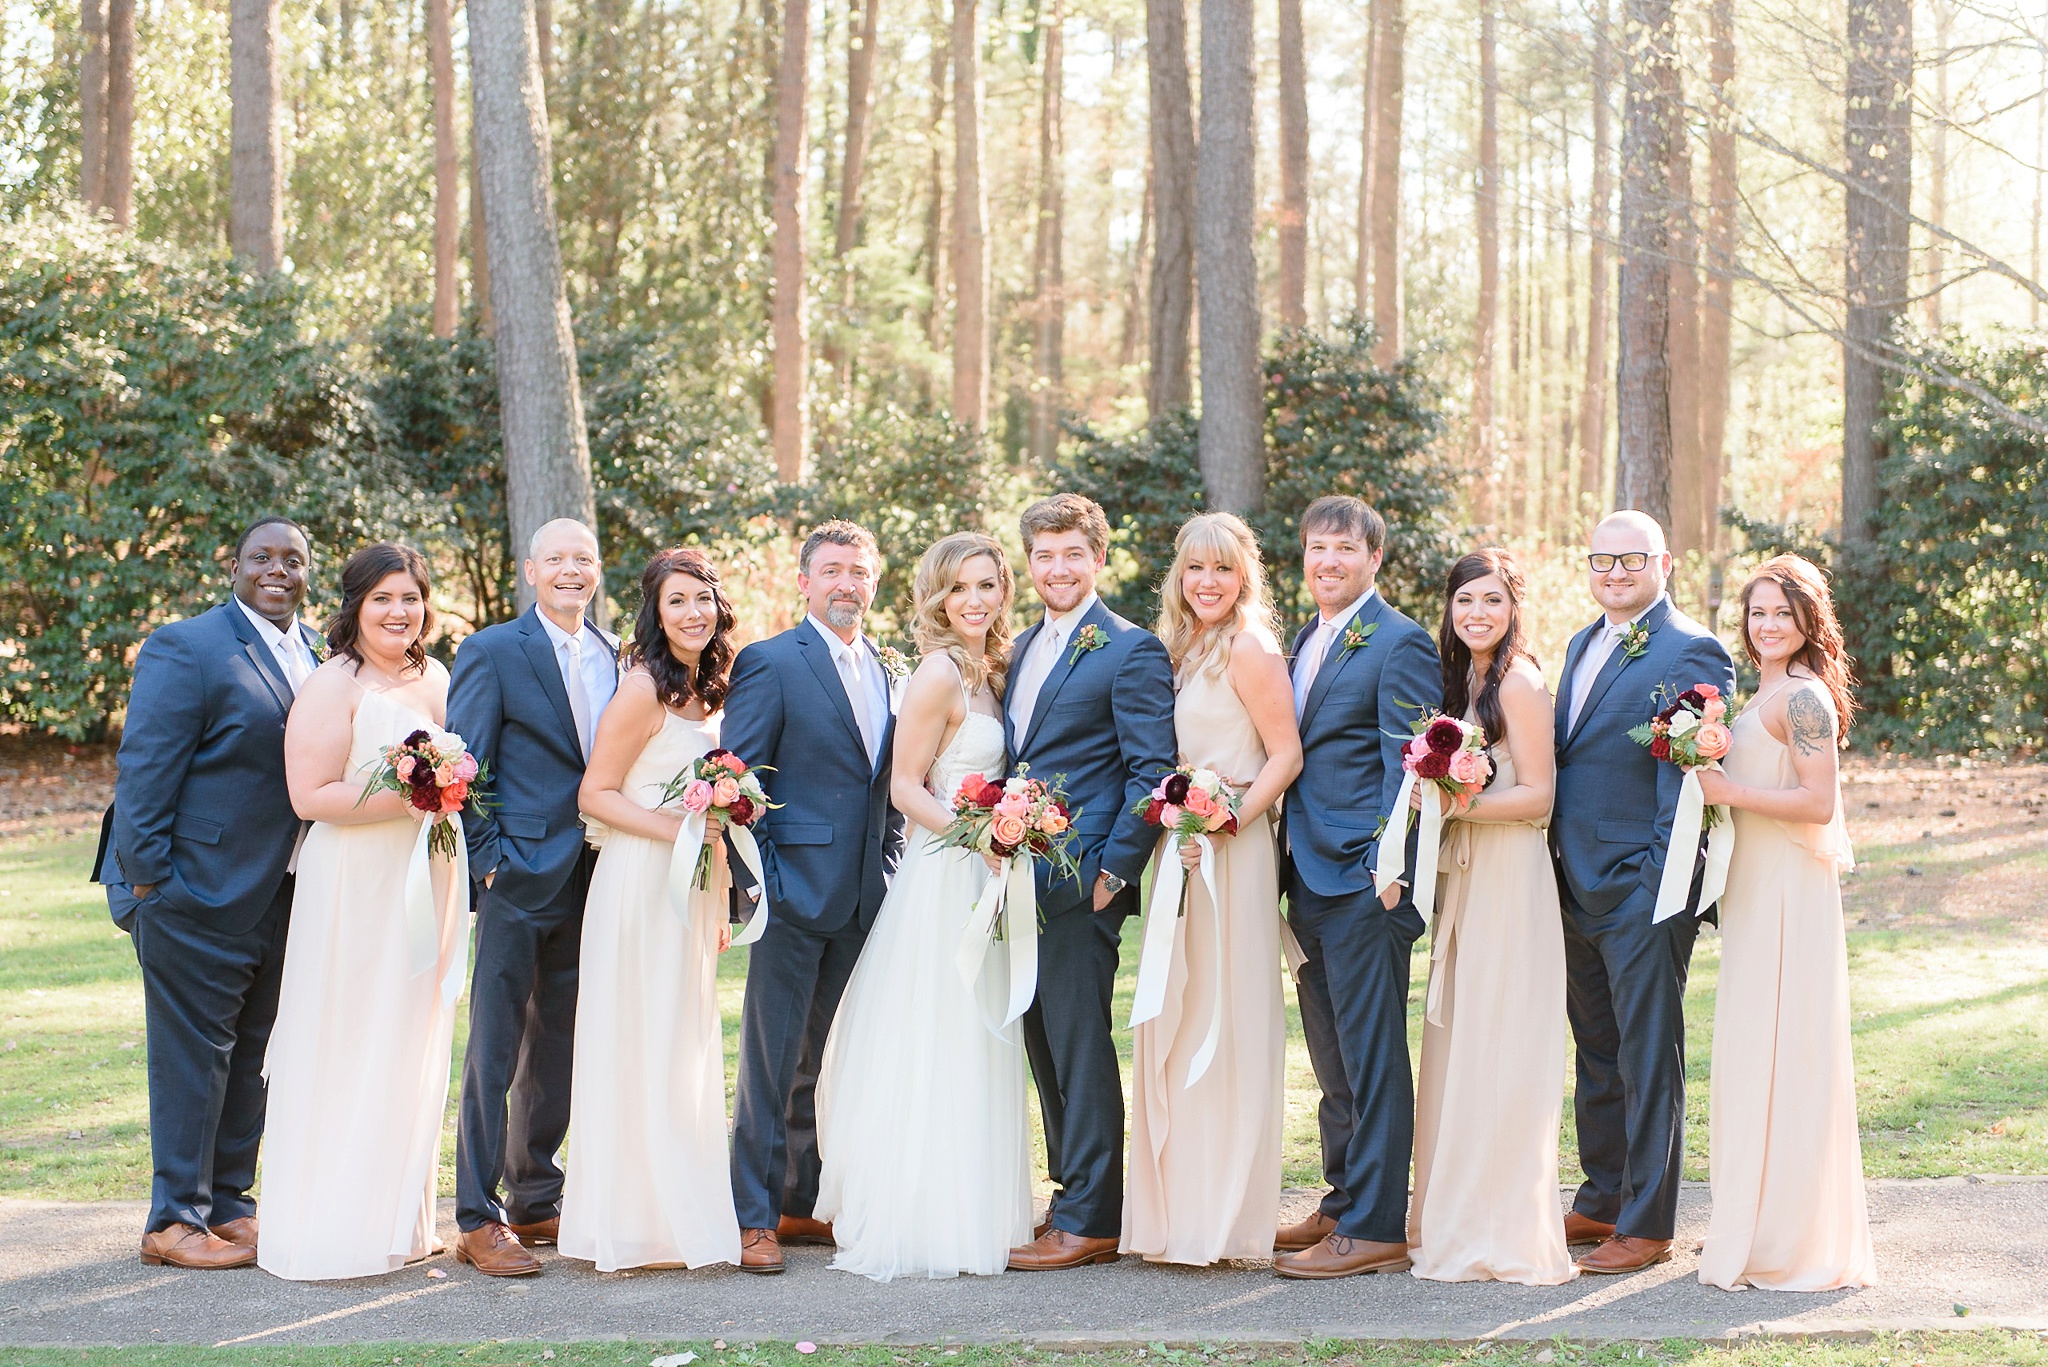 Aldridge Gardens Spring Wedding | Birmingham Alabama Wedding Photographers_0045.jpg